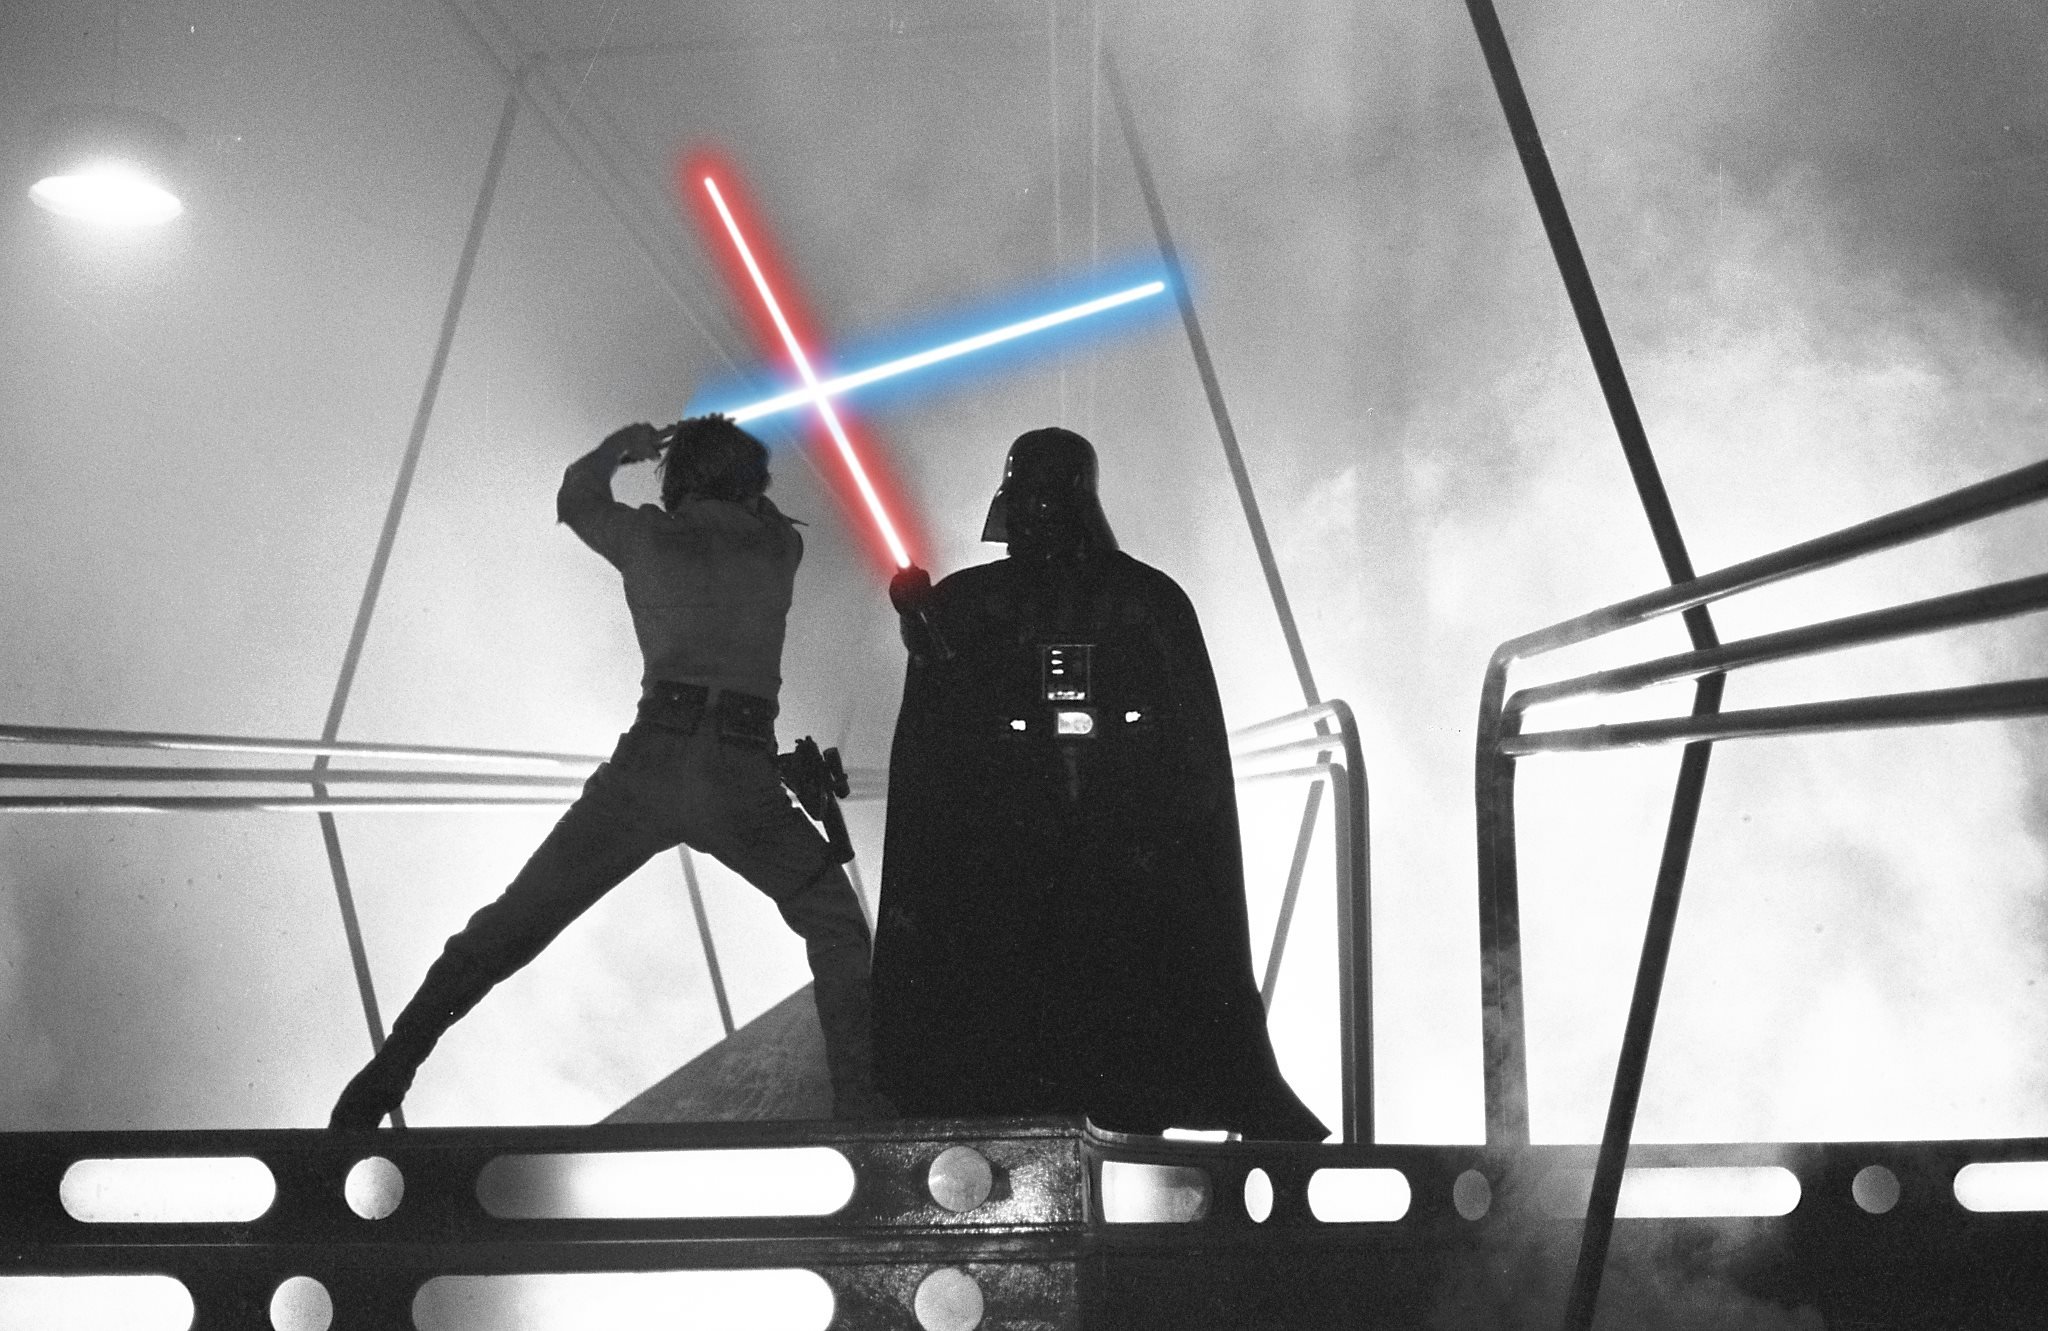 Darth Vader Lightsaber Star Wars Wallpapers